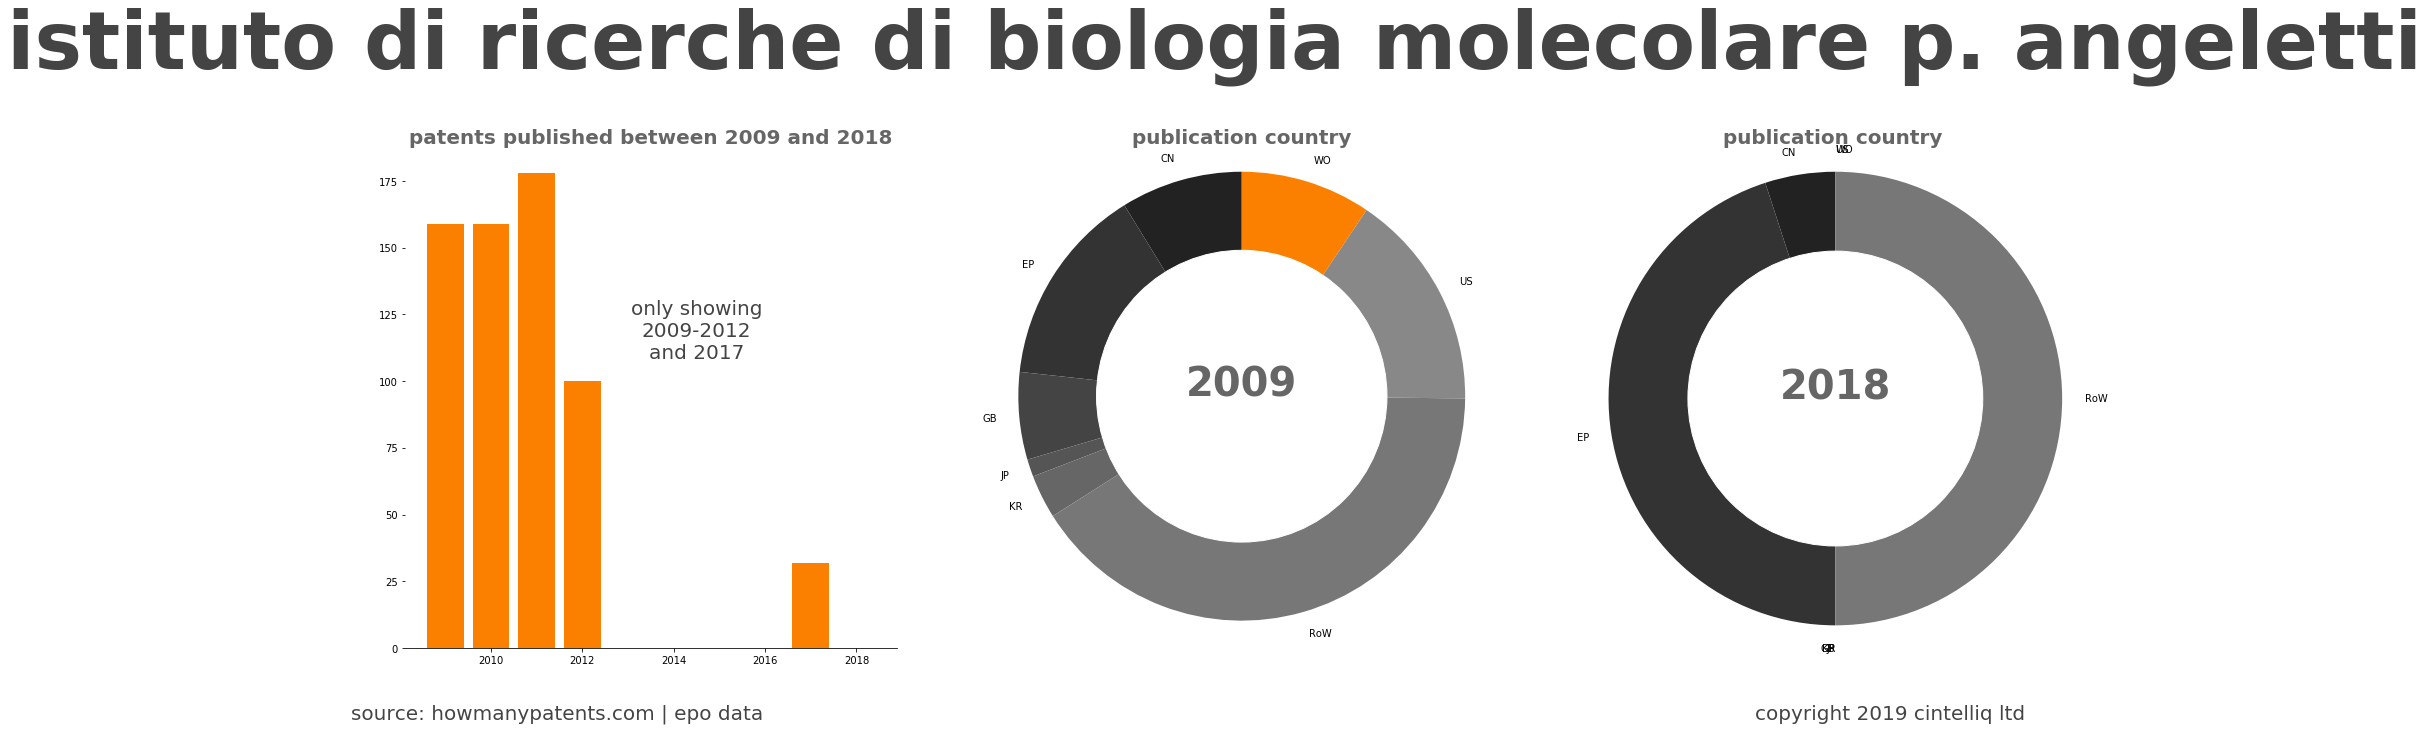 summary of patents for Istituto Di Ricerche Di Biologia Molecolare P. Angeletti